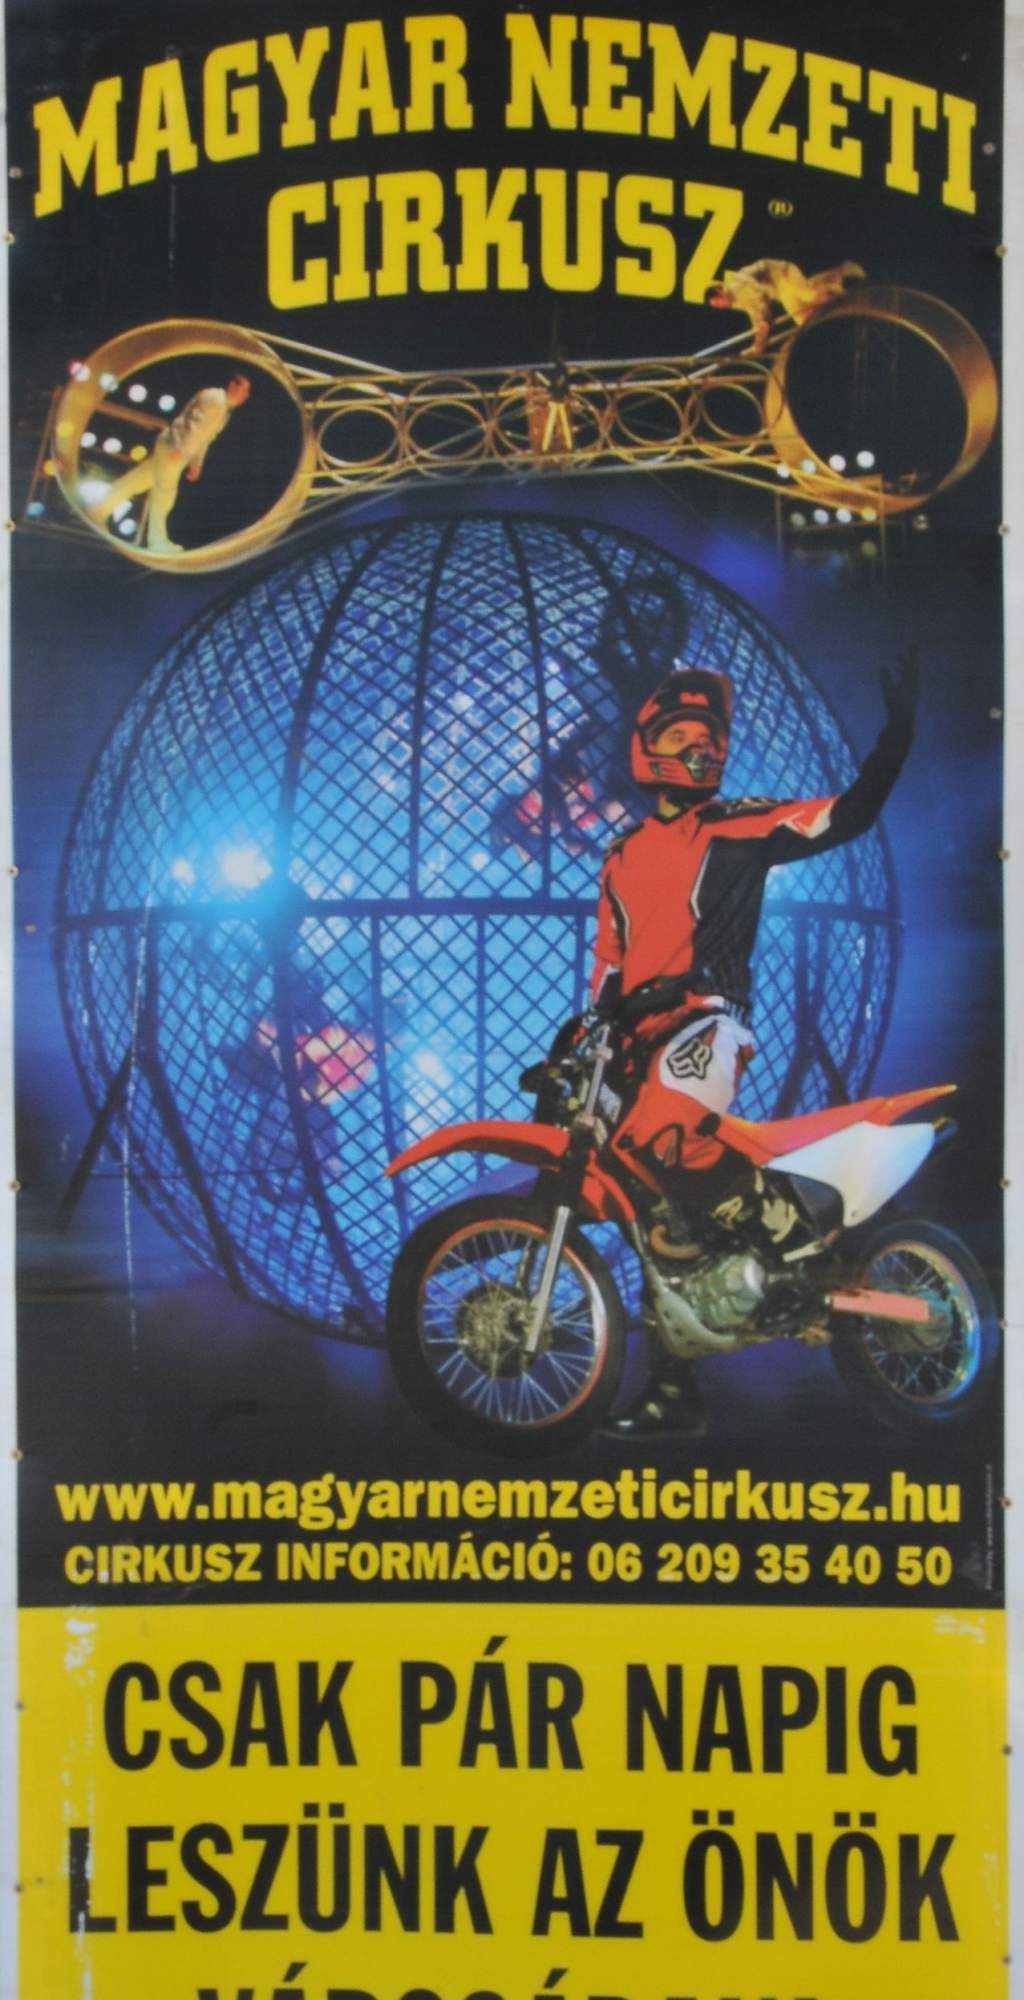 Magyar Nemzeti Cirkusz Kecskeméten